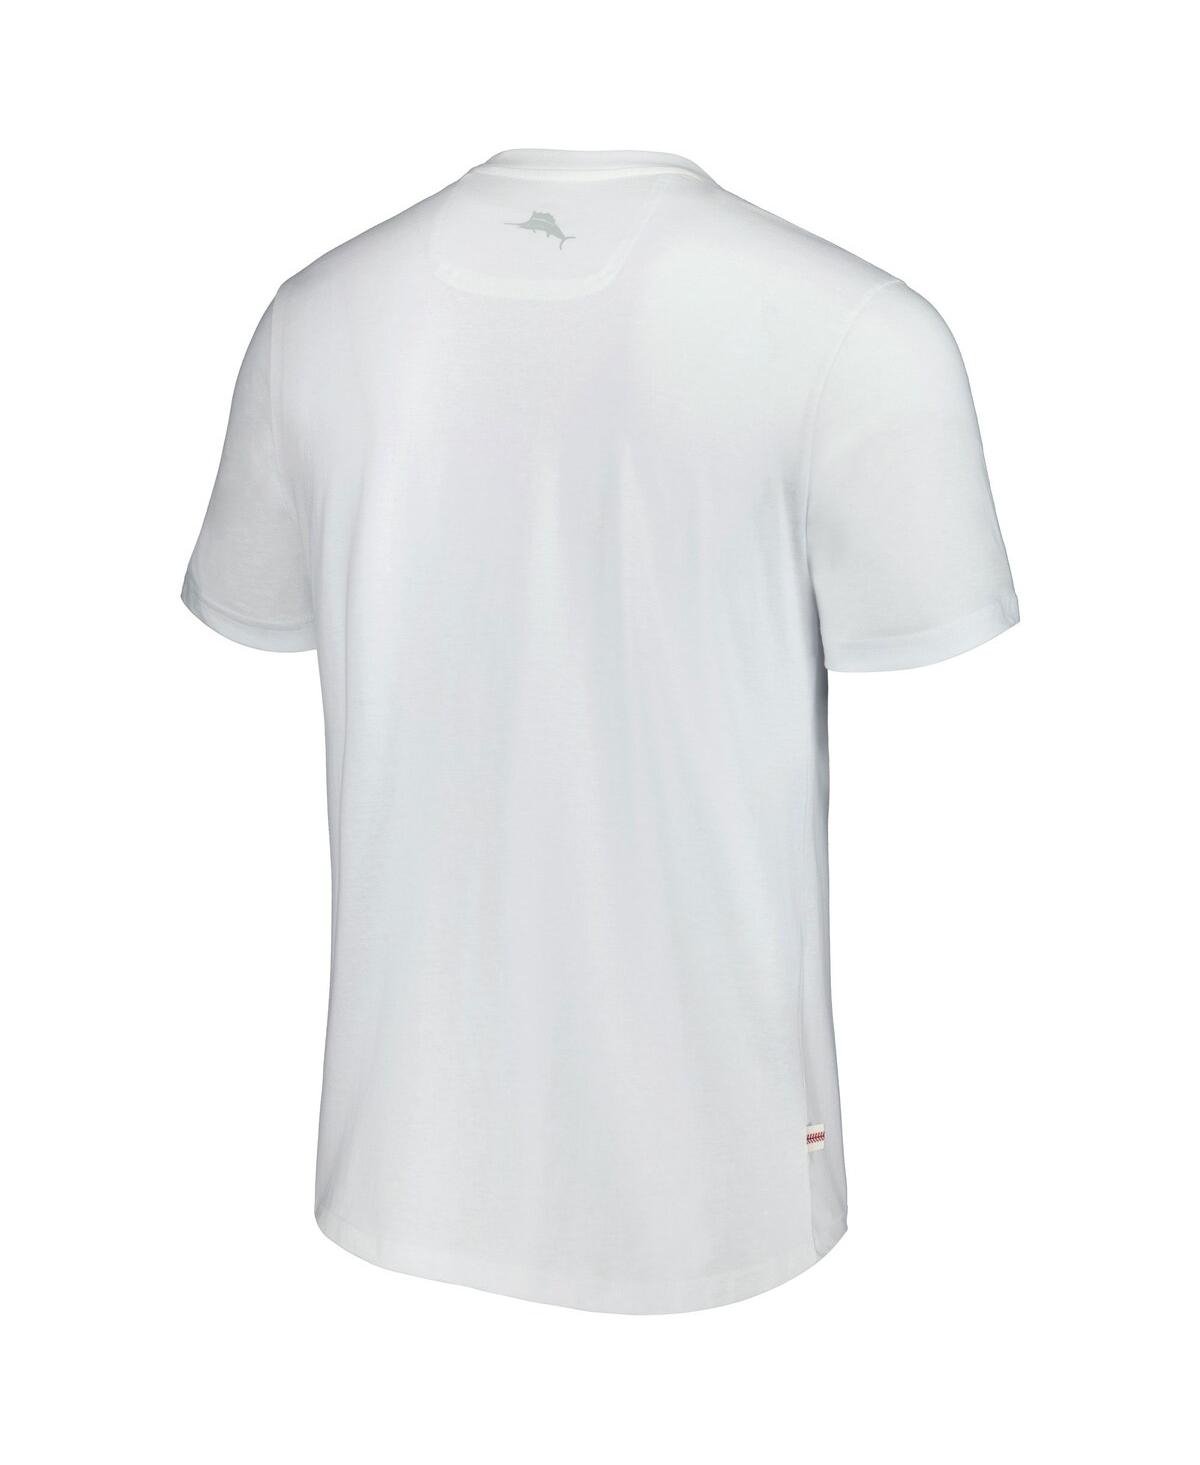 Shop Tommy Bahama Men's  White Los Angeles Dodgers Island League T-shirt